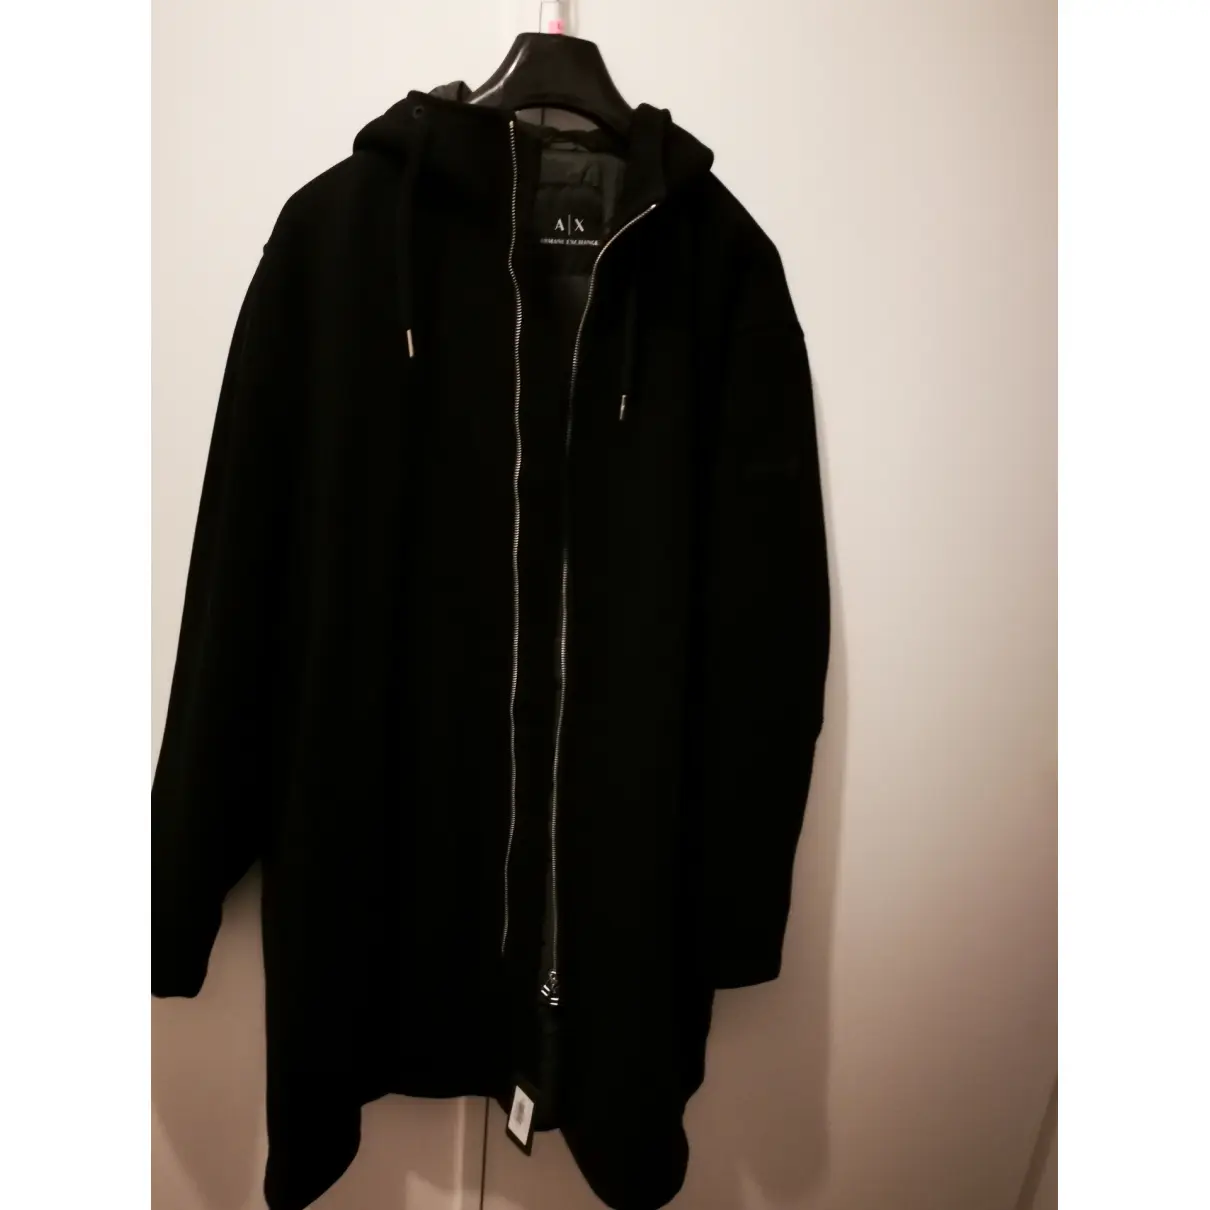 Buy Armani Exchange Black Synthetic Coat online